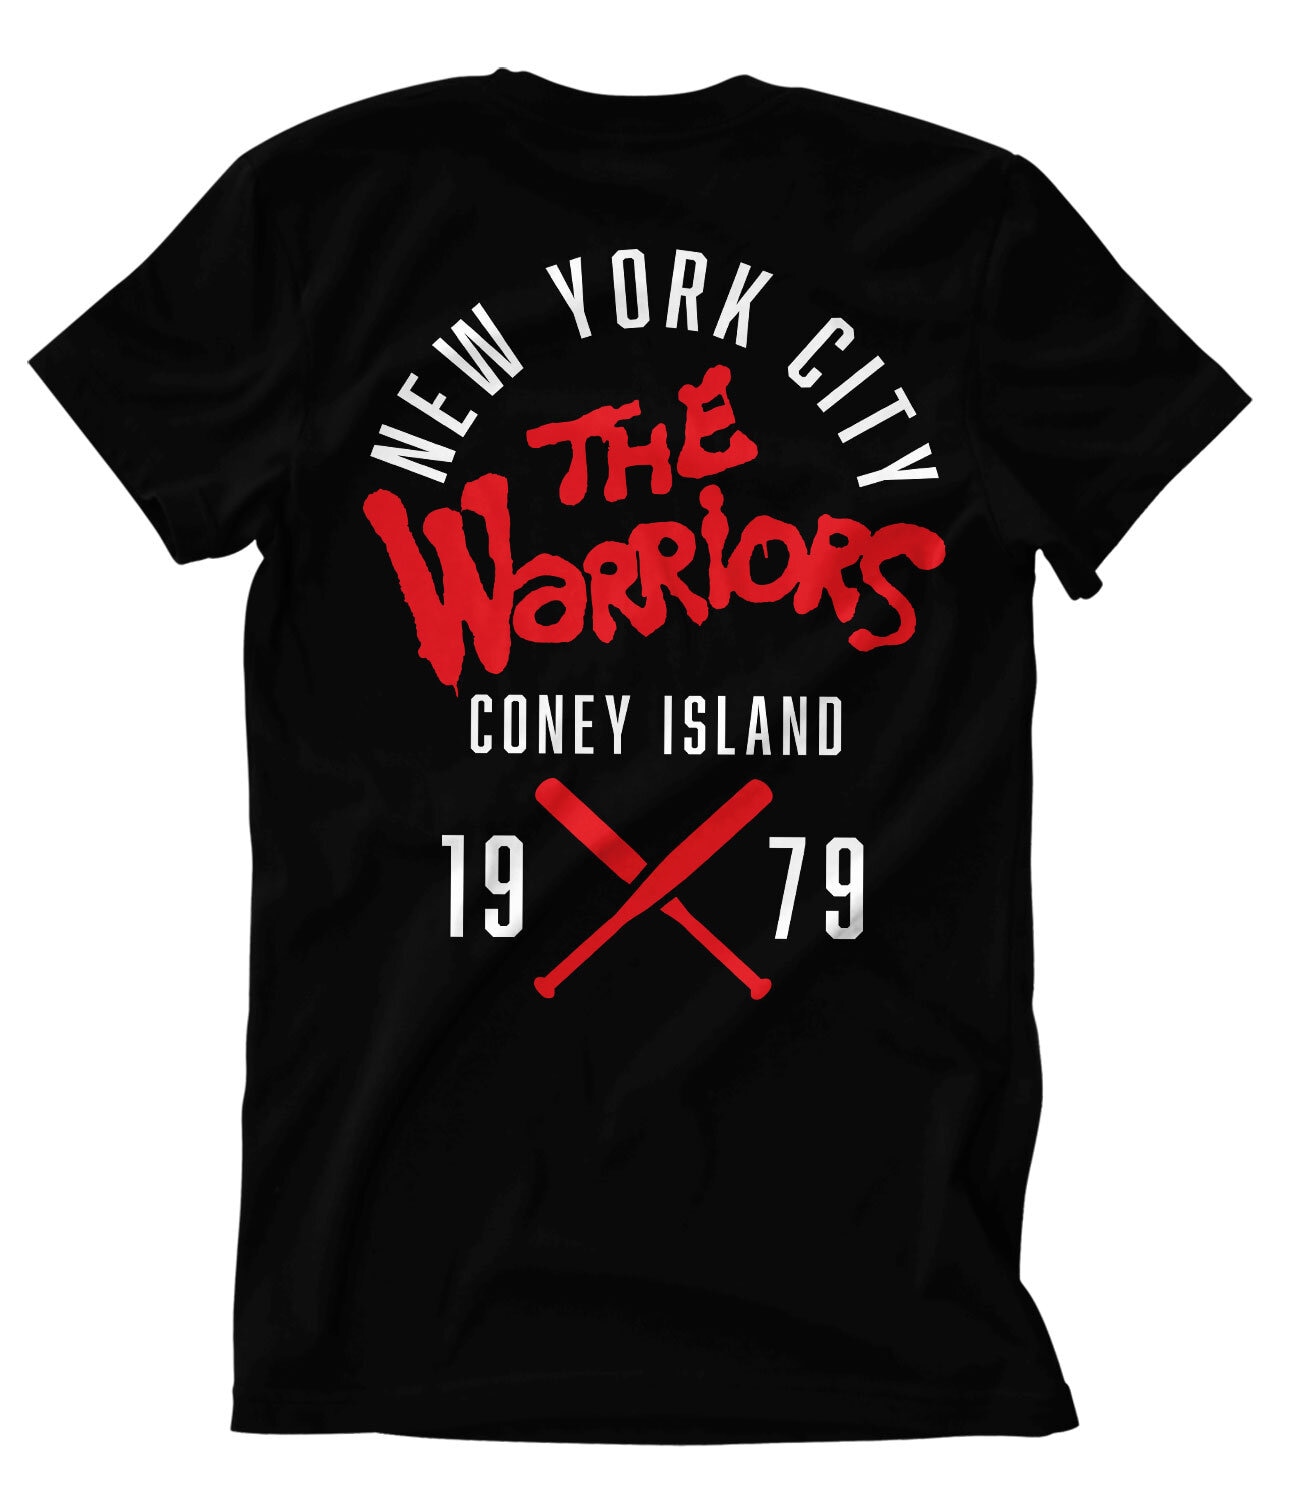 The Warriors - Island T-Shirt - Shirtstore